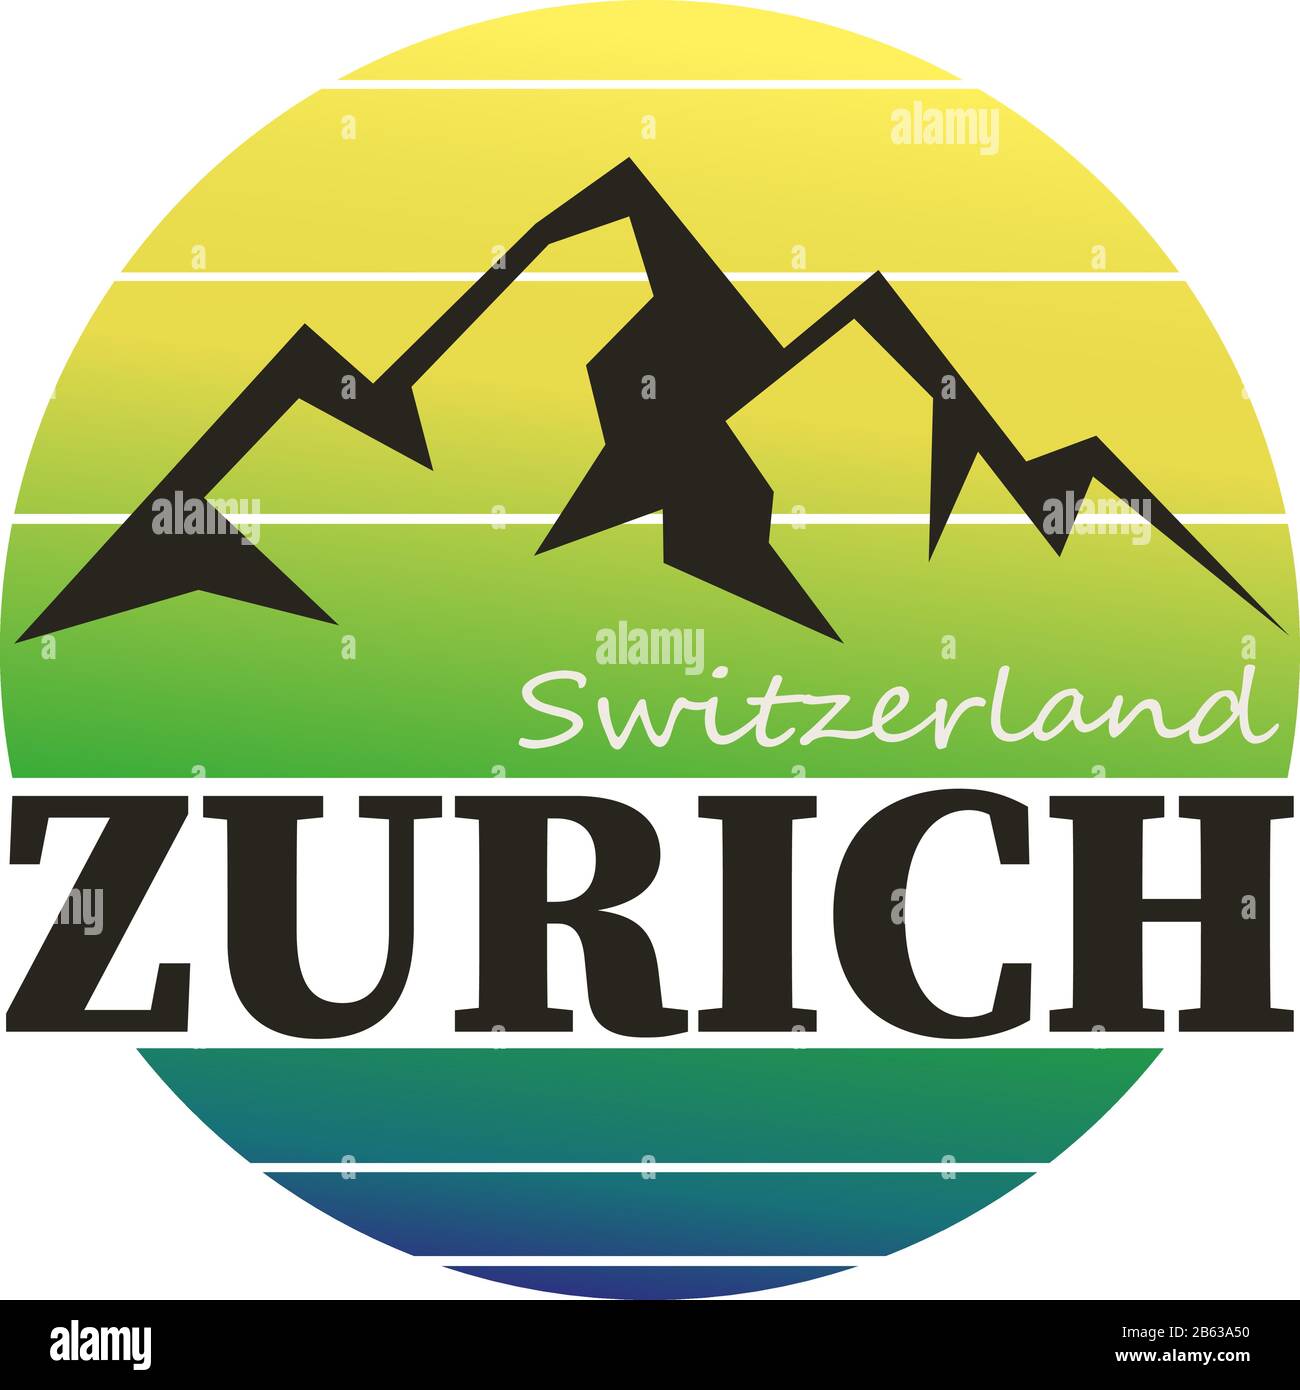 Zurich Switzerland Label Stamp Icon Design Tourism Stock Vector